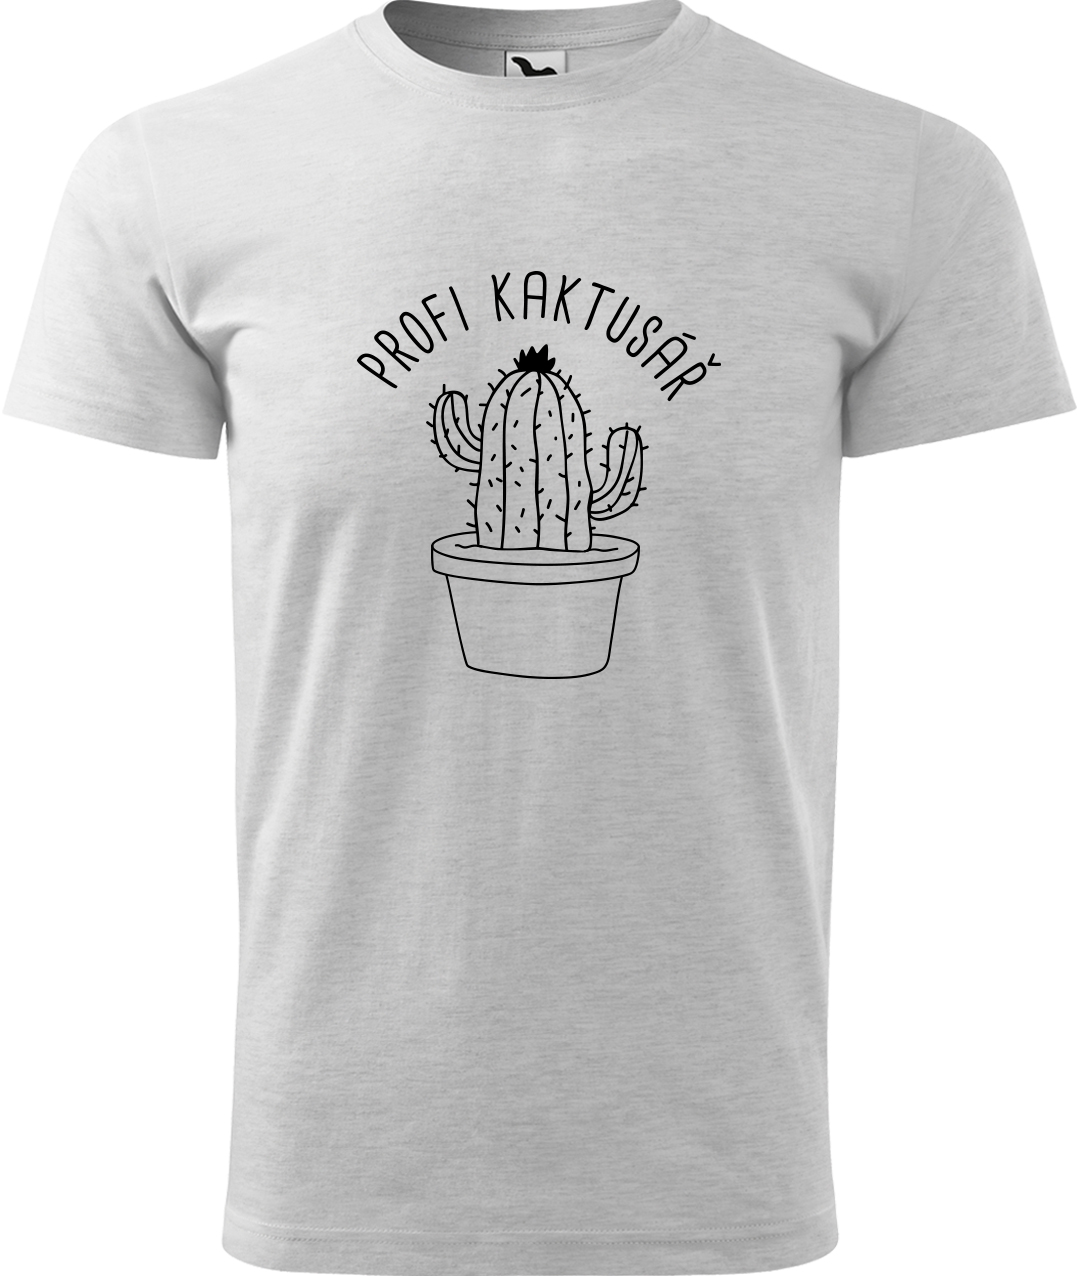 Tričko pro zahradníka - Profi kaktusář Velikost: L, Barva: Světle šedý melír (03), Střih: pánský